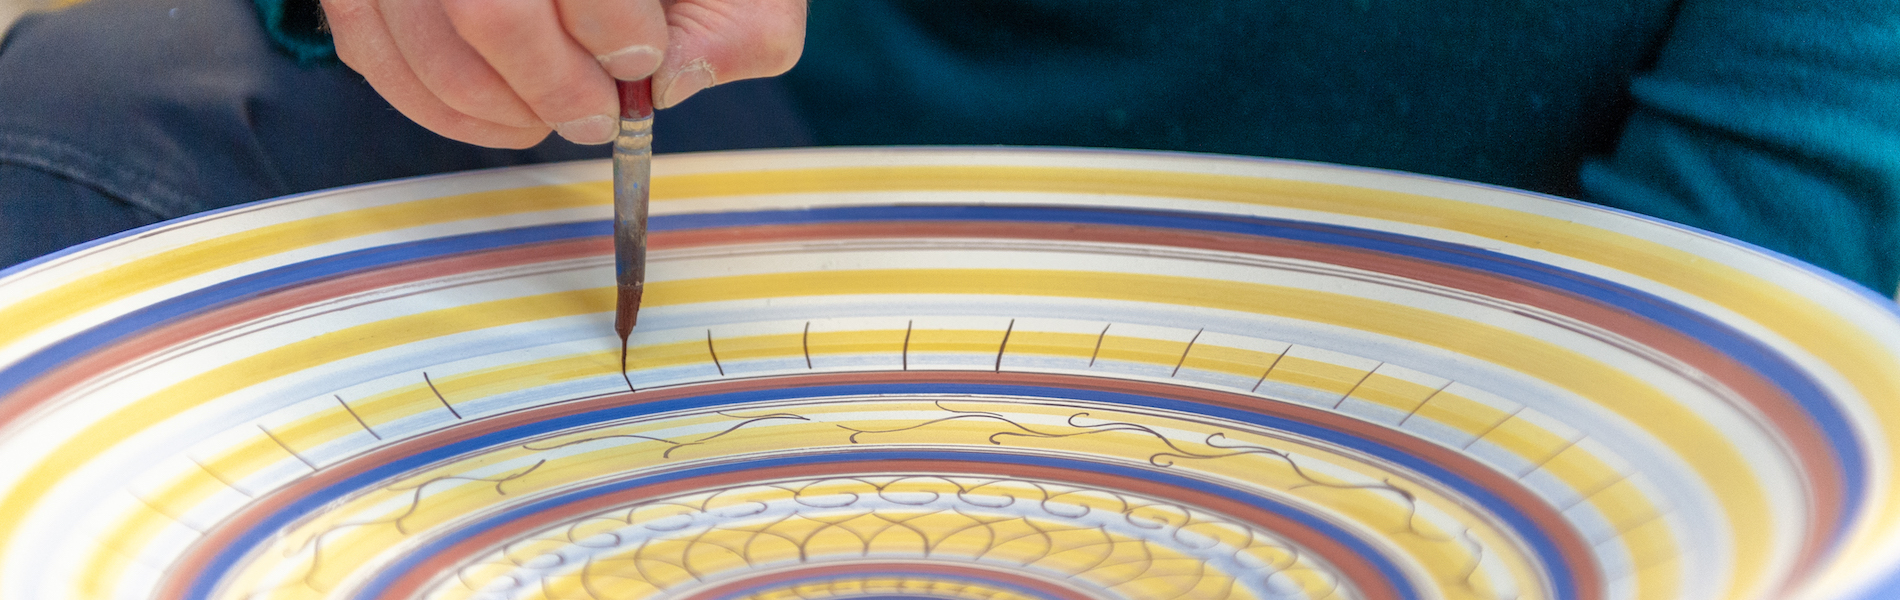 La cerámica de Montelupo Fiorentino